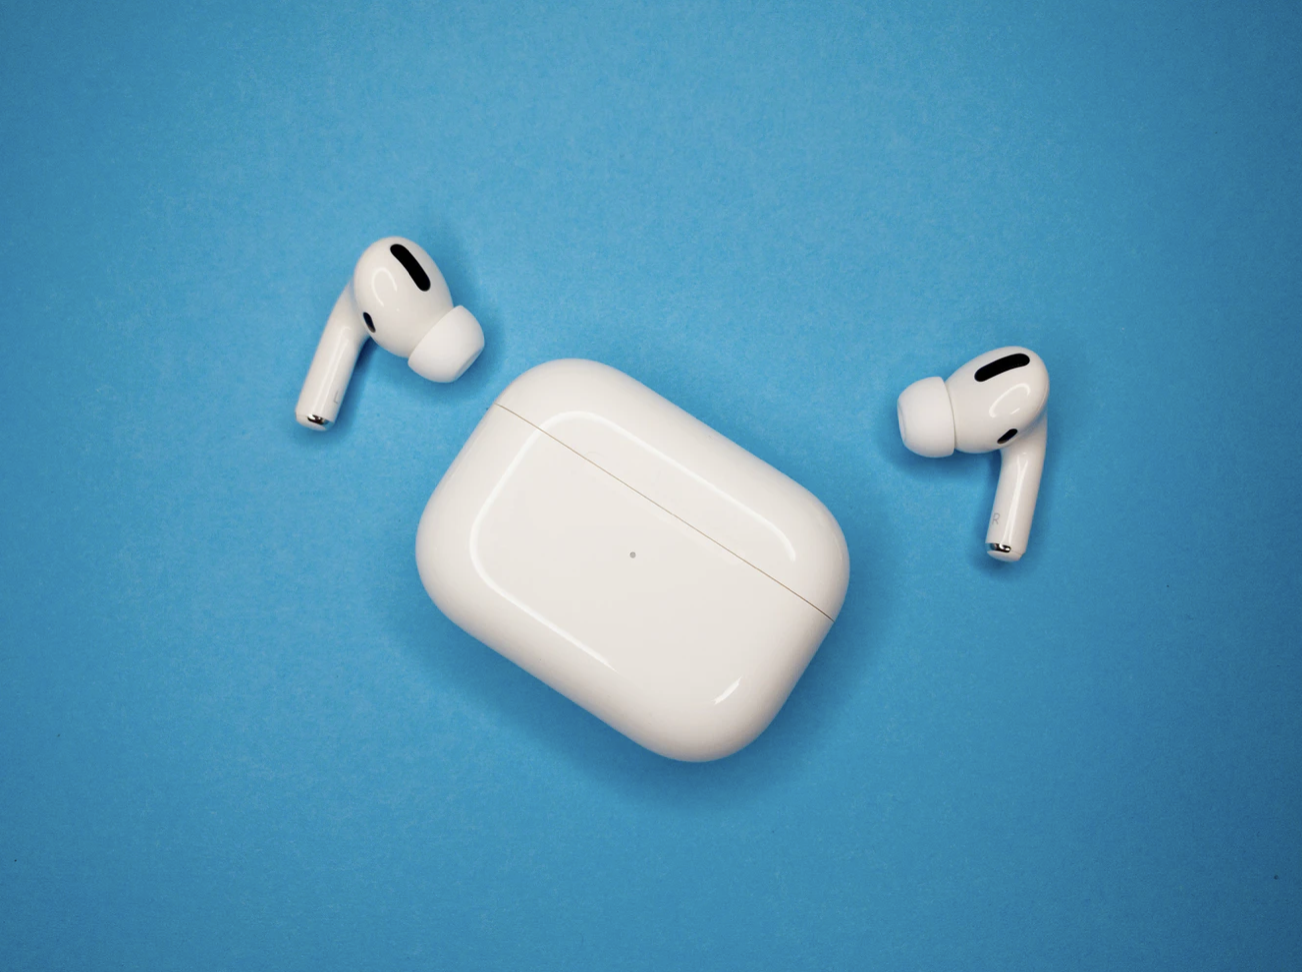 Nowe bezprzewodowe słuchawki Apple zaczną śledzić ruchy użytkowników